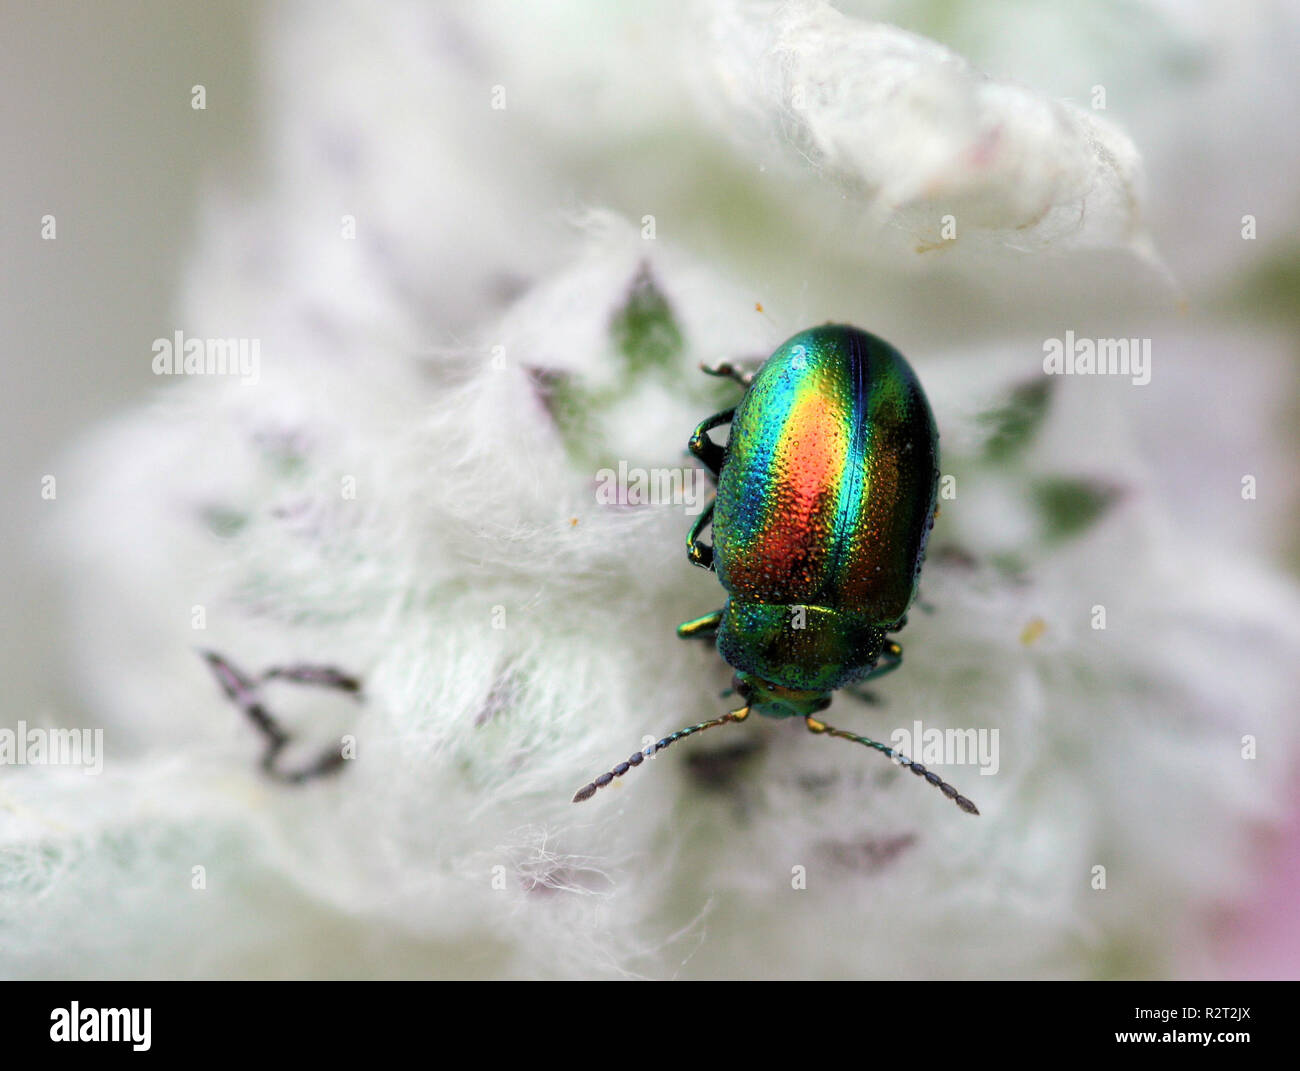 superb leaf beetle (chrysolina fastuosa) Stock Photo